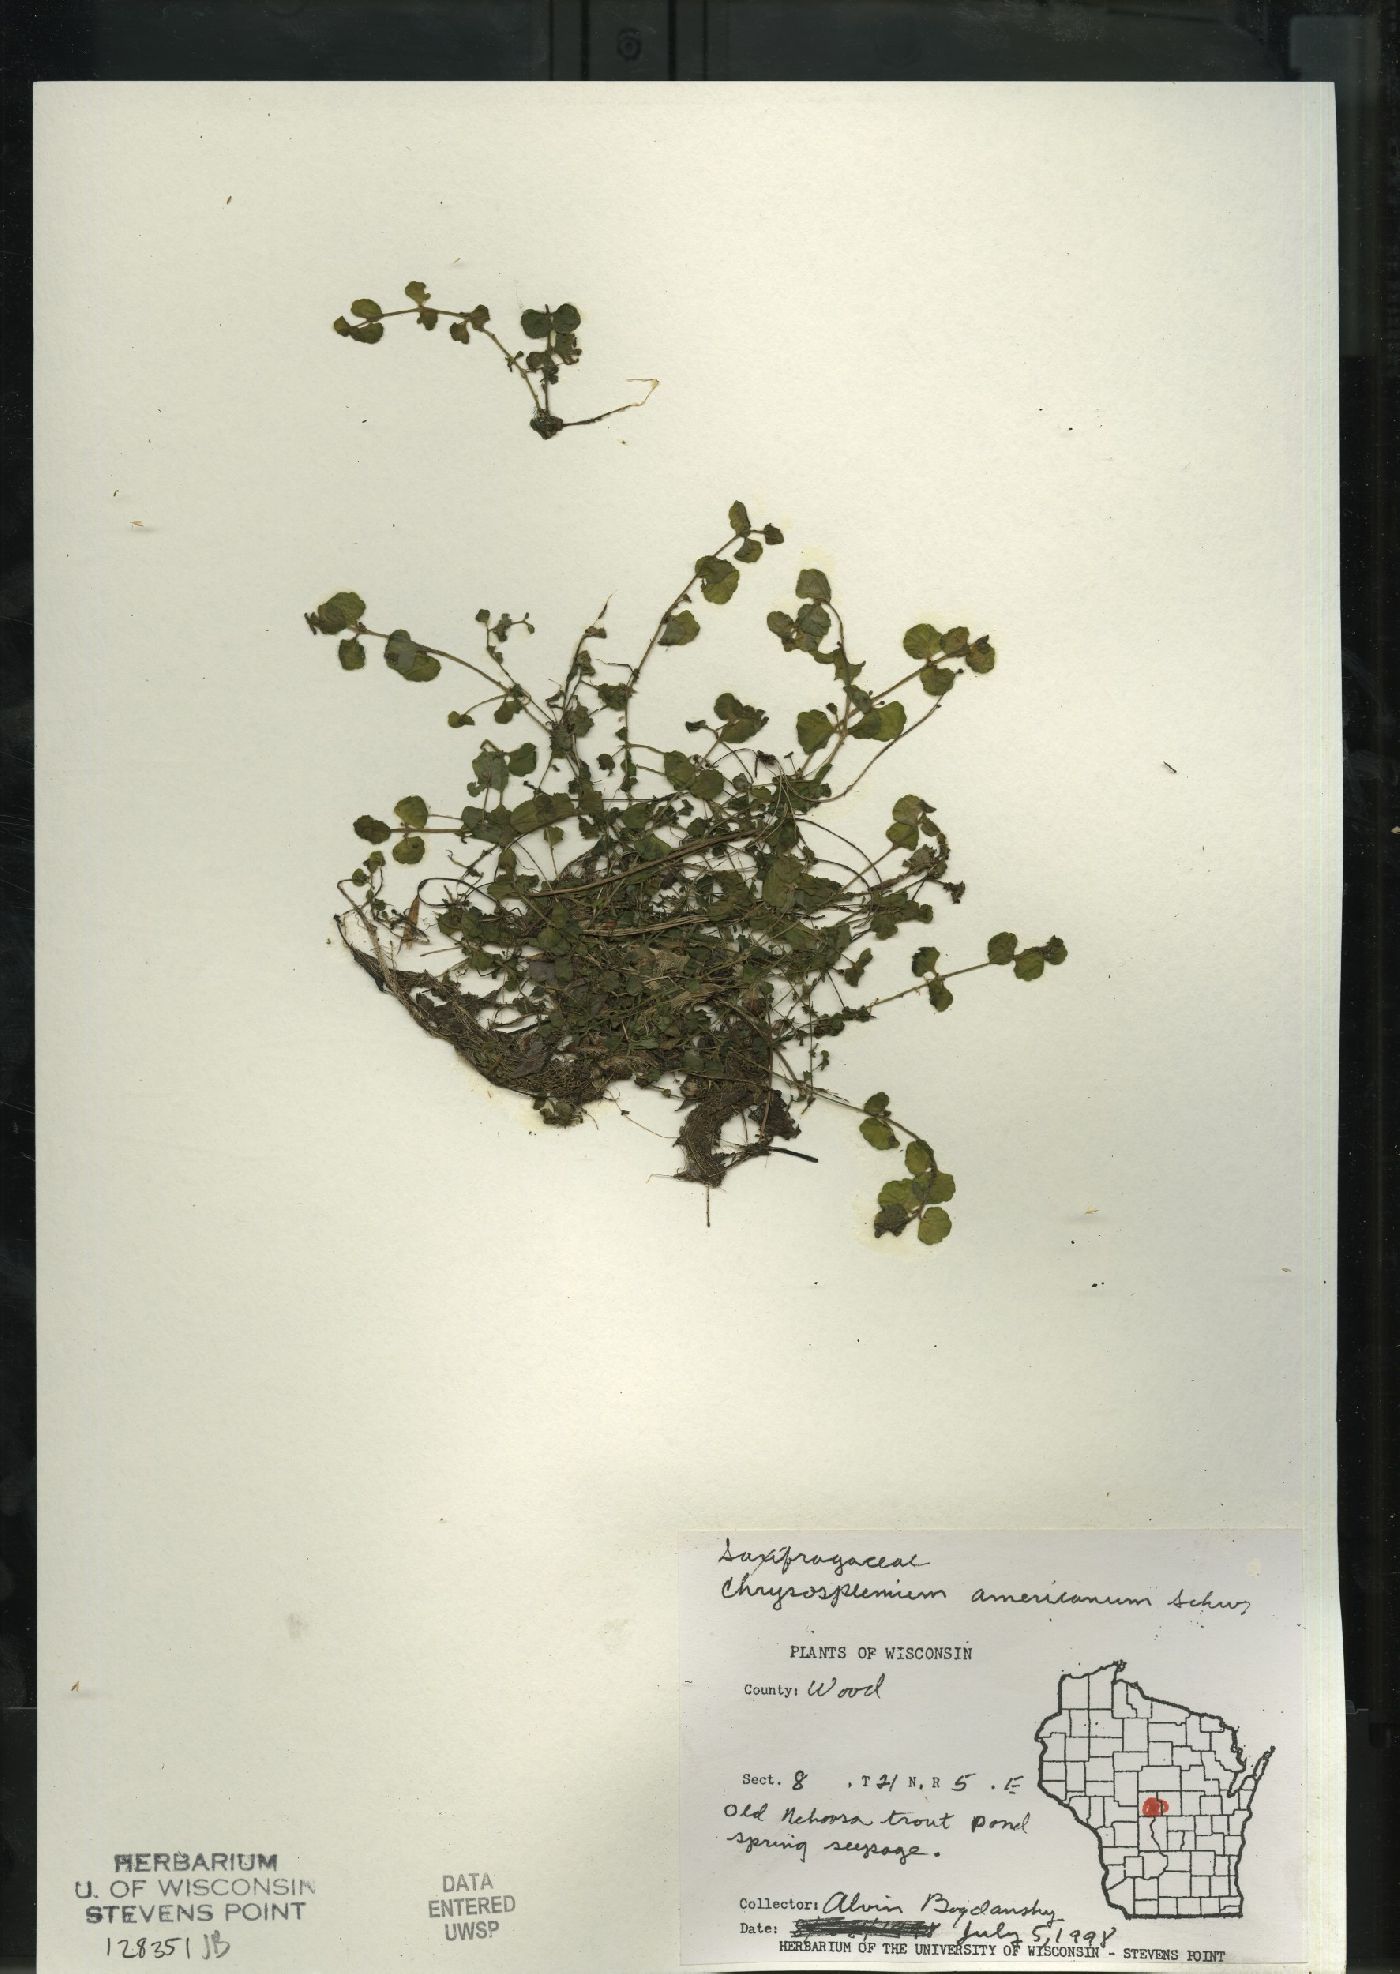 Chrysosplenium americanum image